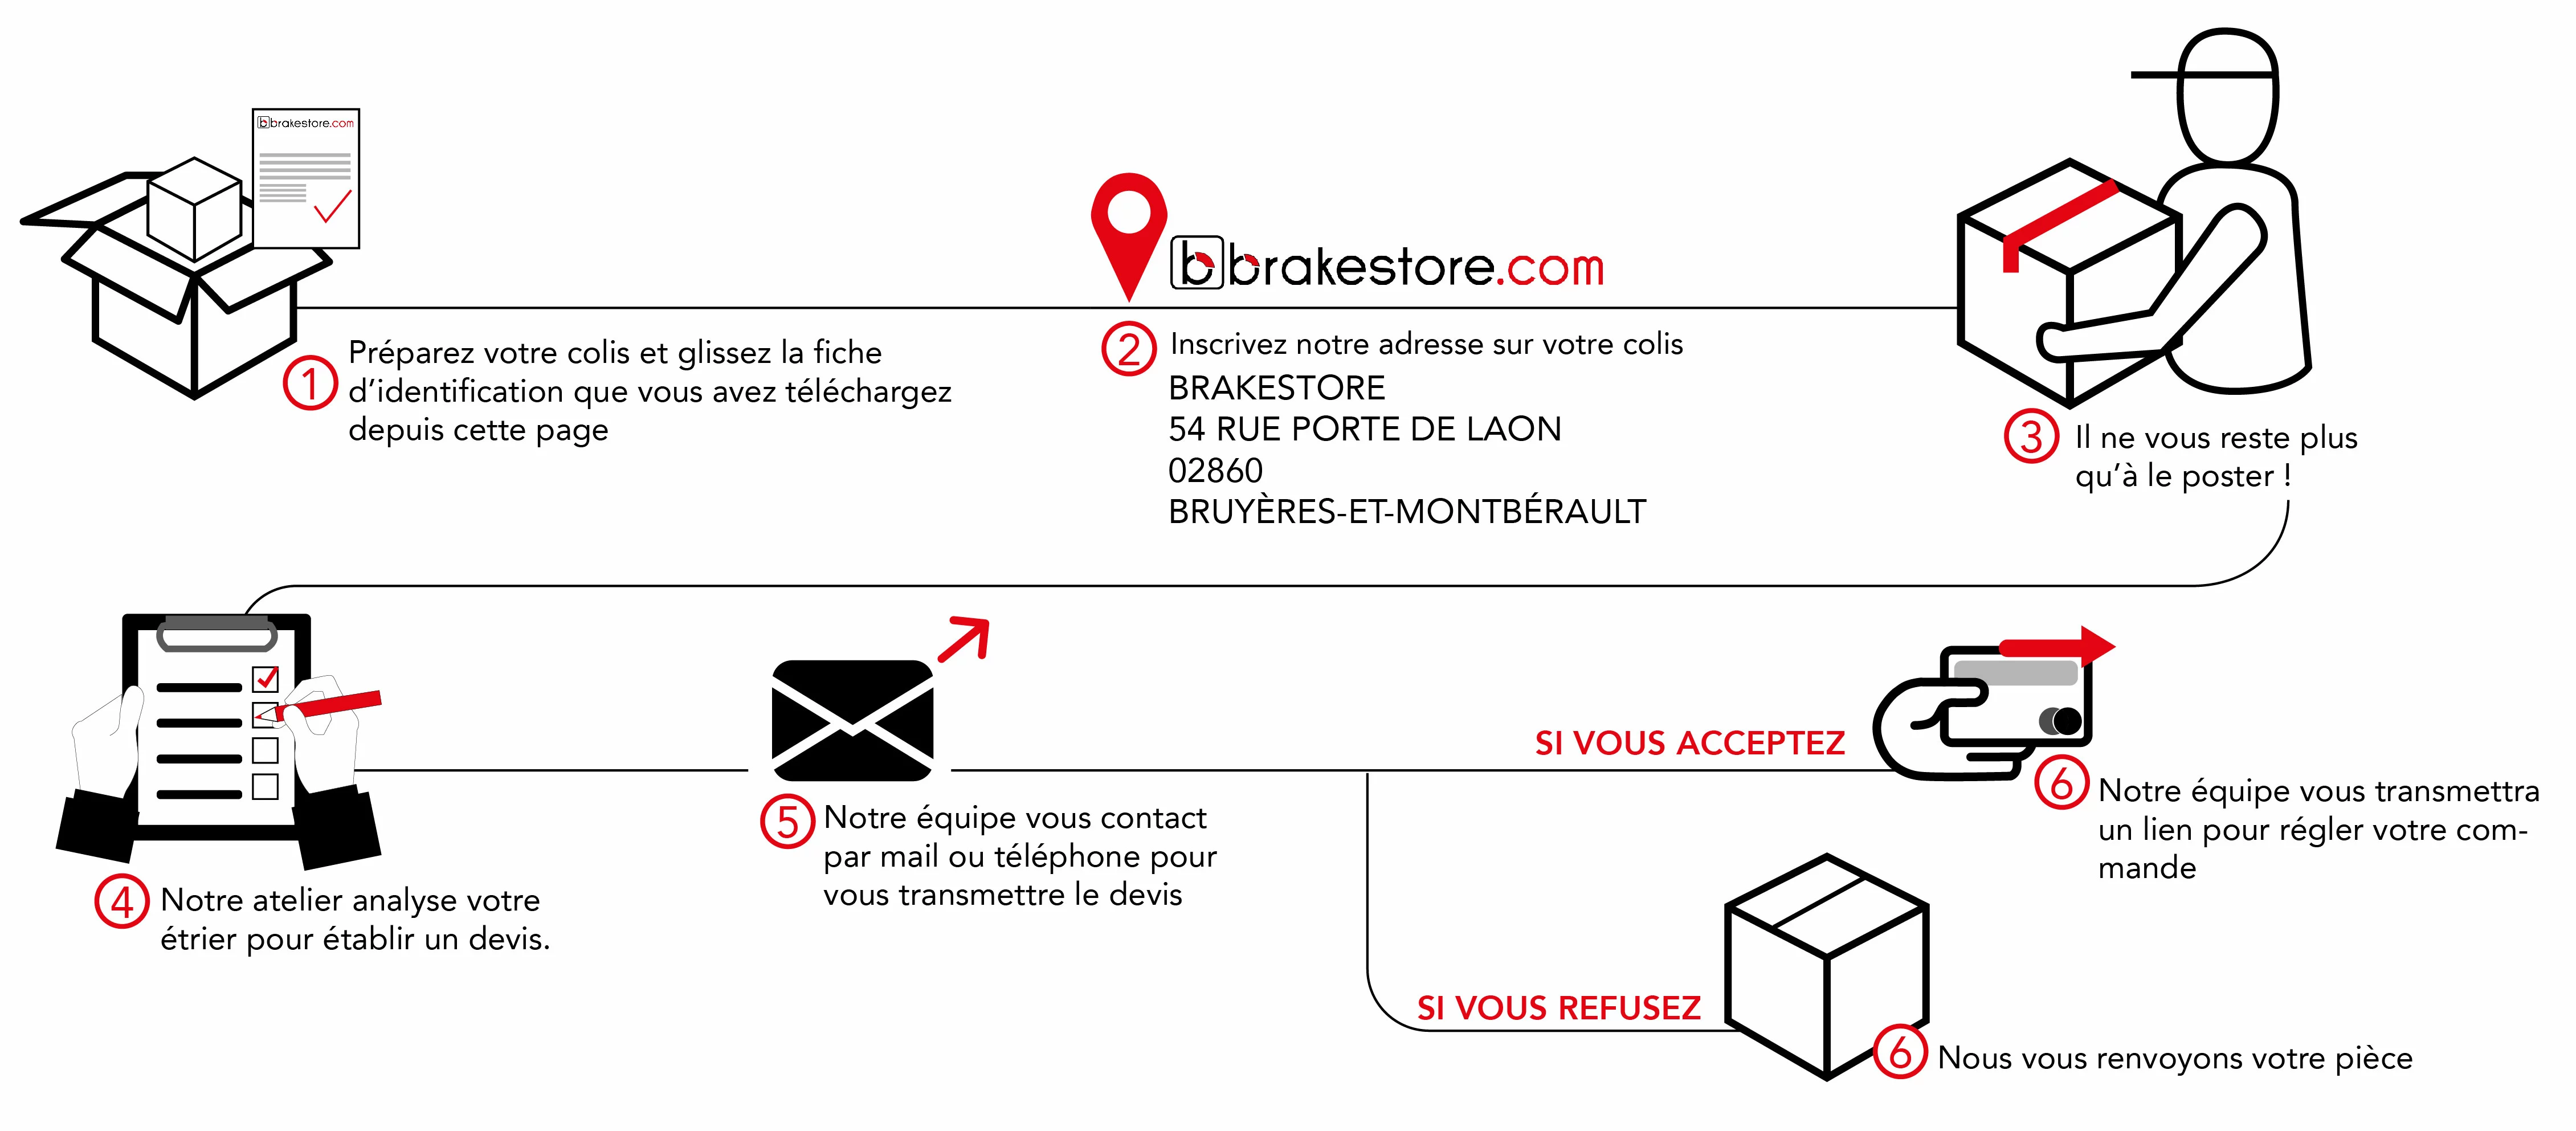 Envoyez nous vos pièces à rénover à l'adresse suivante : Brakestore, 54 rue porte de Laon, 02860 Bruyères-et-Montbérault